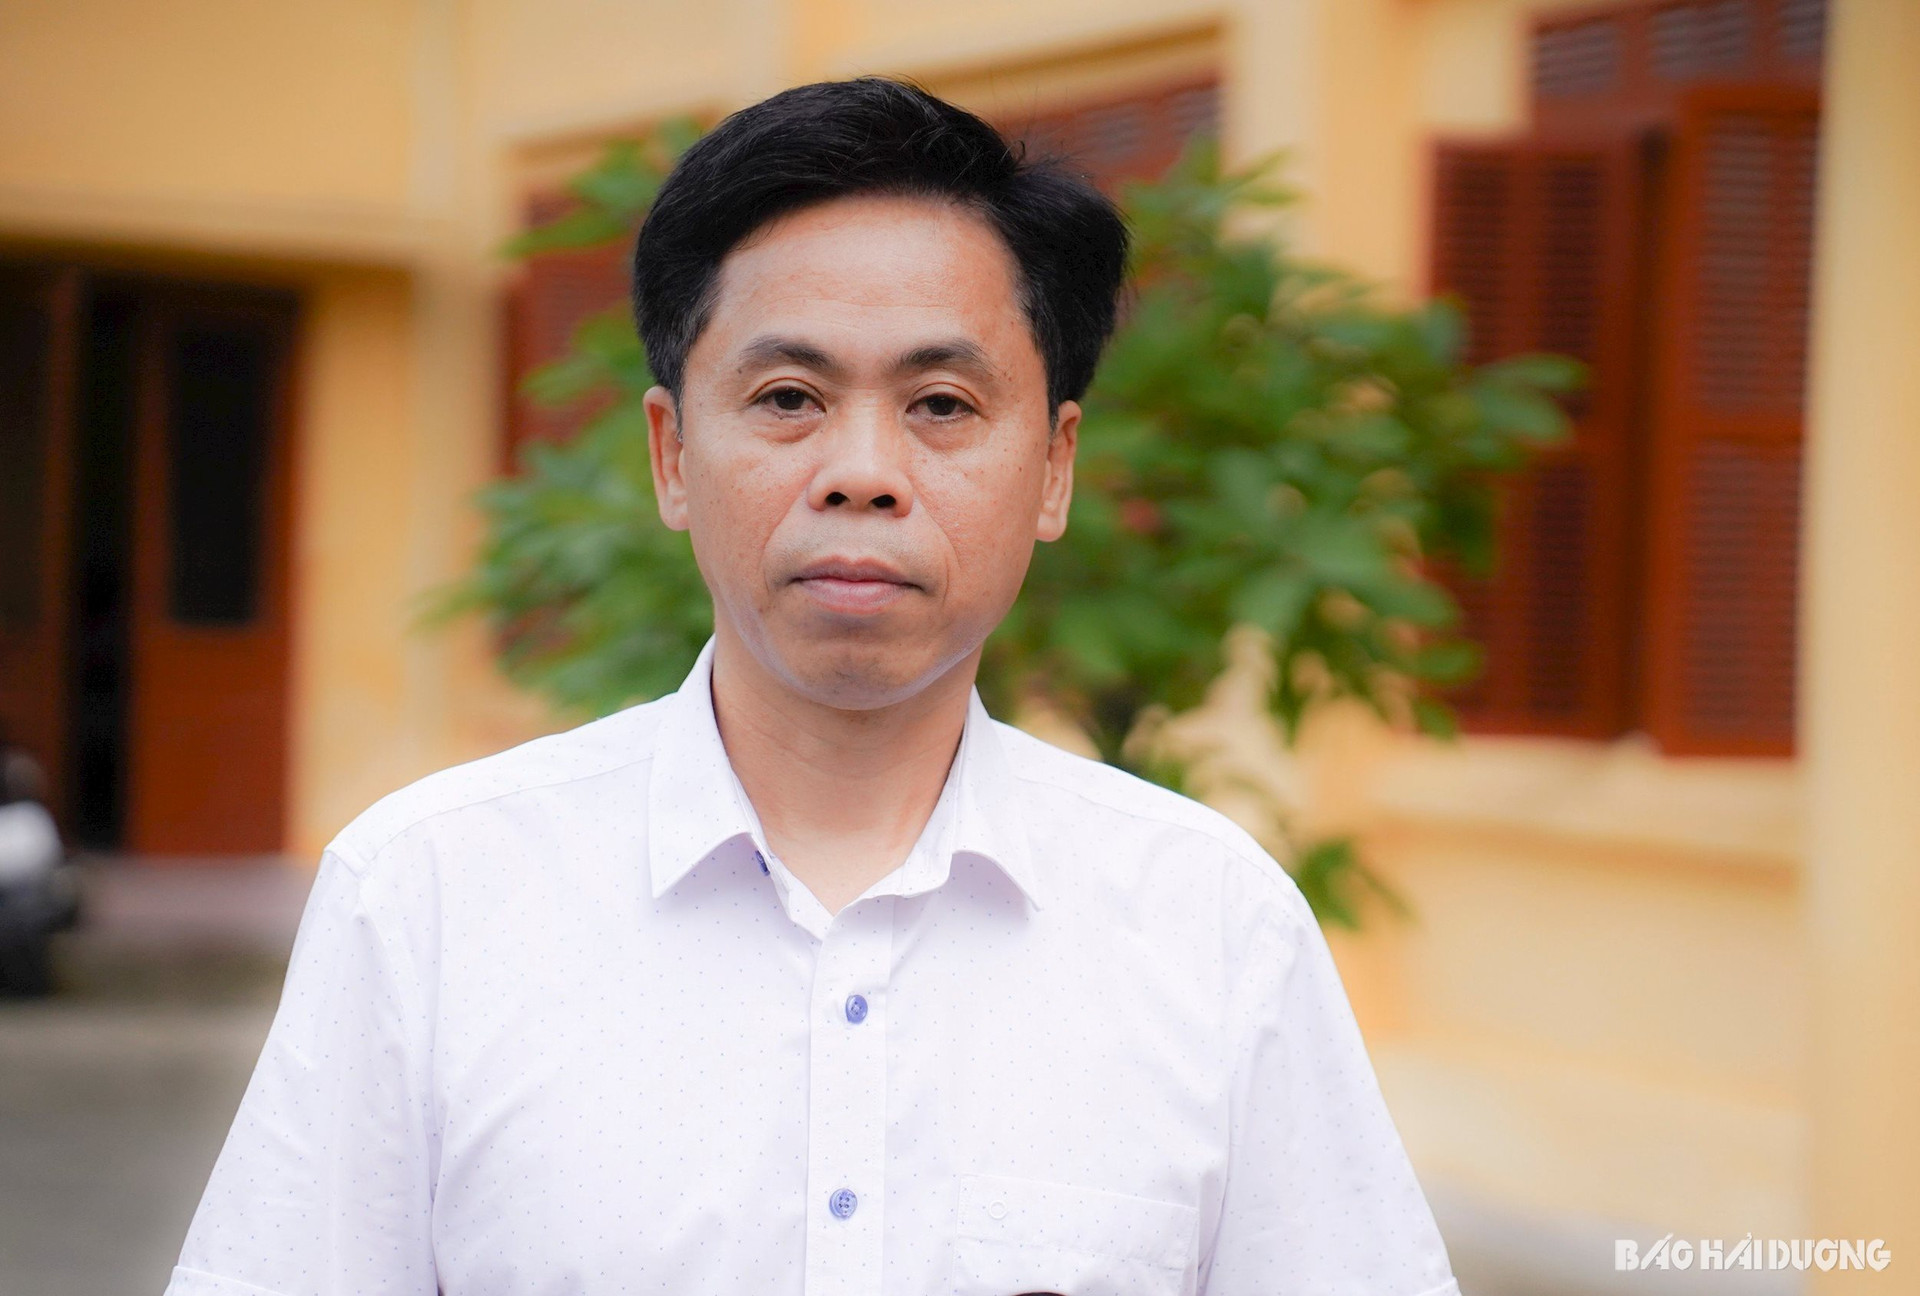 Thac si, bac si Hoan g Văn Huỳnh. Phó giám đốc Trung tâm Kiểm soát bệnh tật tỉnh